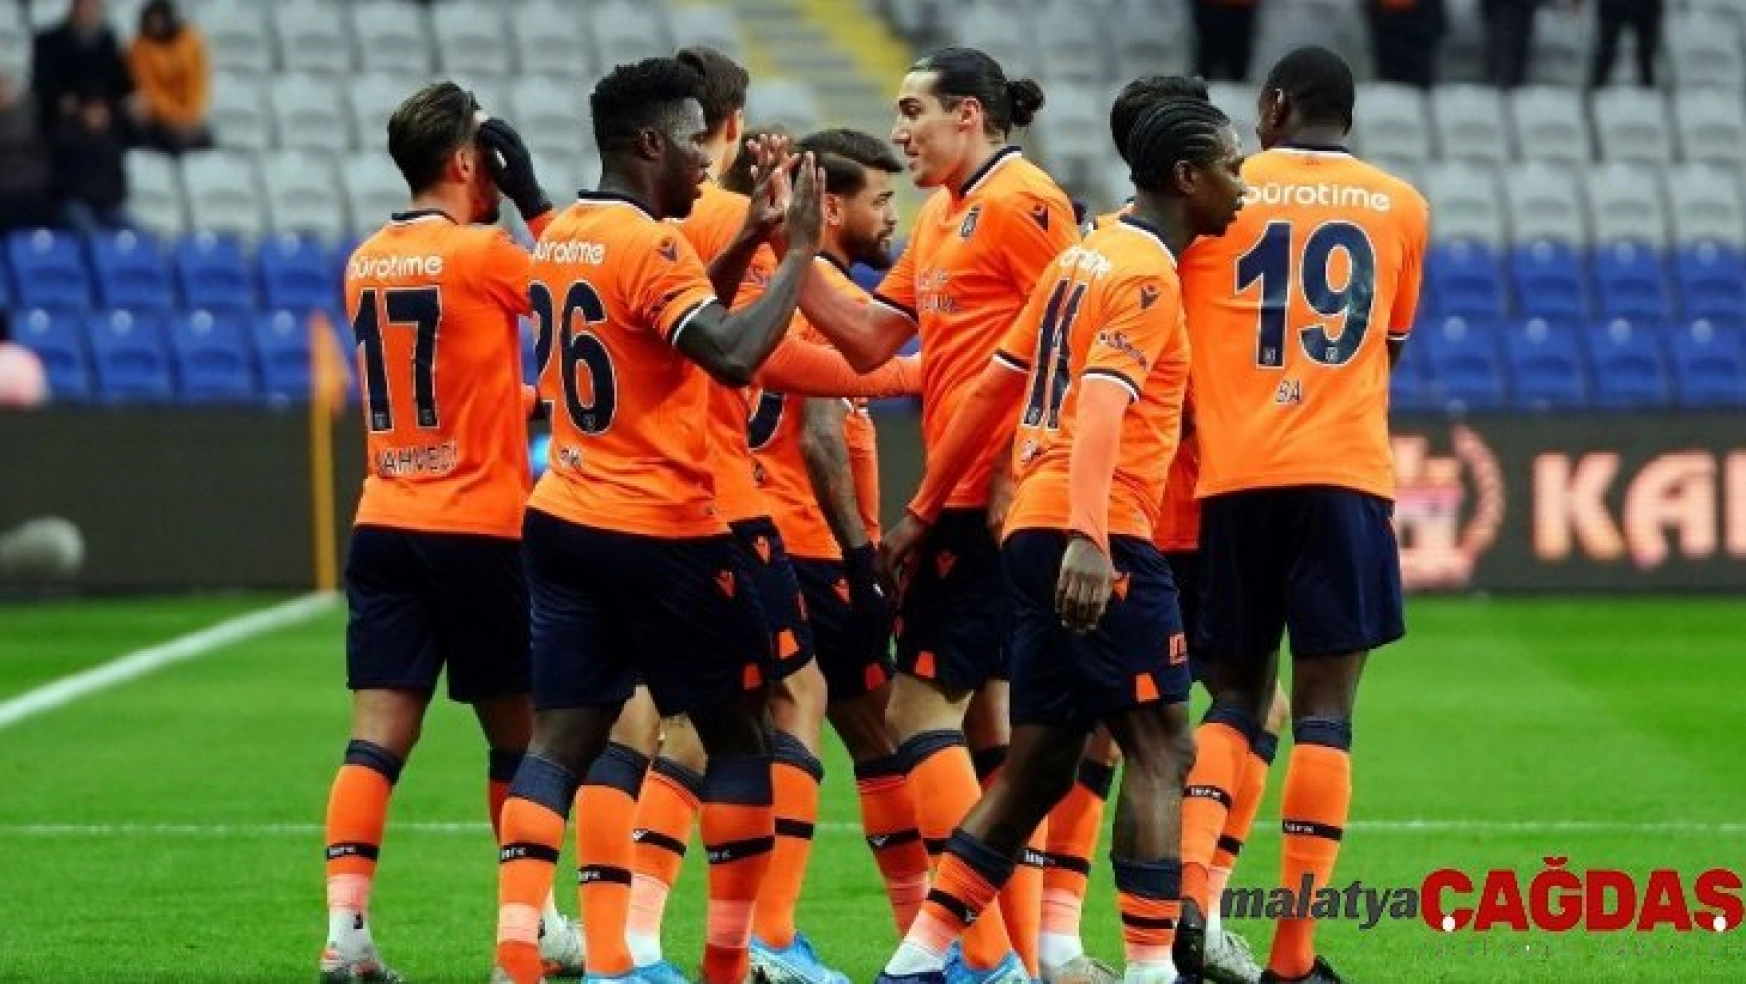 Süper Lig: Medipol Başakşehir: 4 - Yeni Malatyaspor: 0 (İlk yarı)